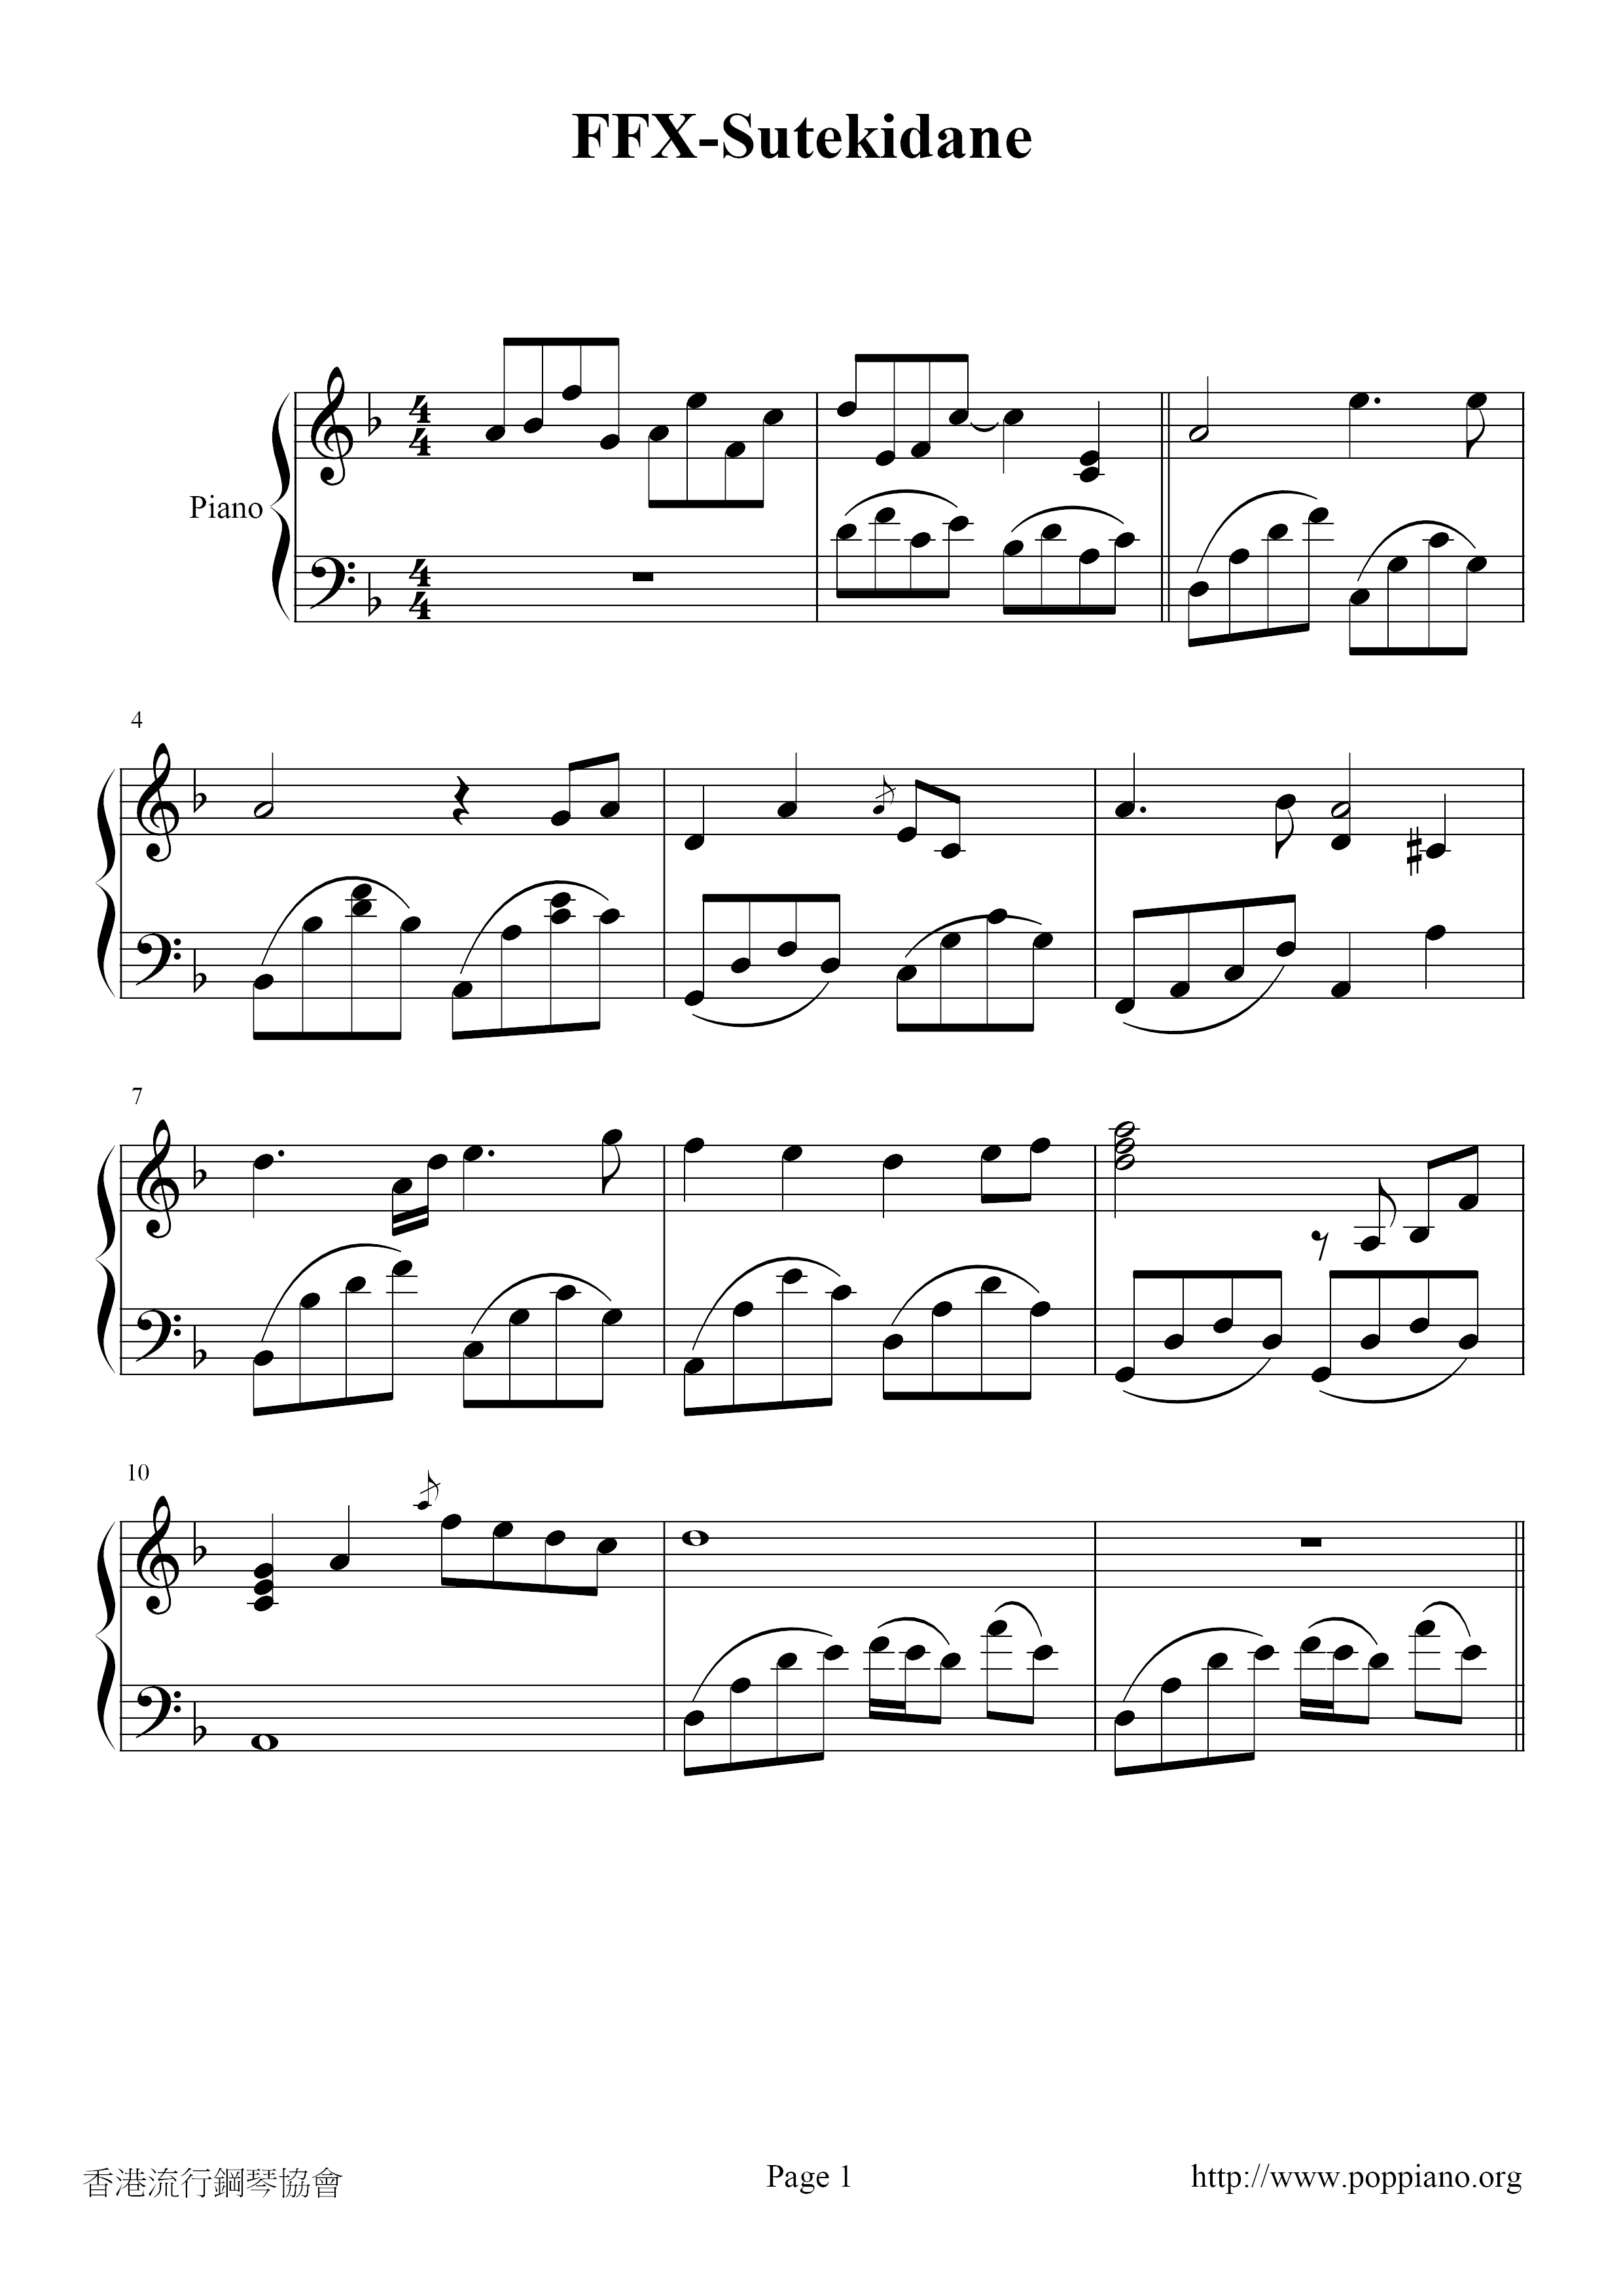 Sutekidane (FFX)ピアノ譜